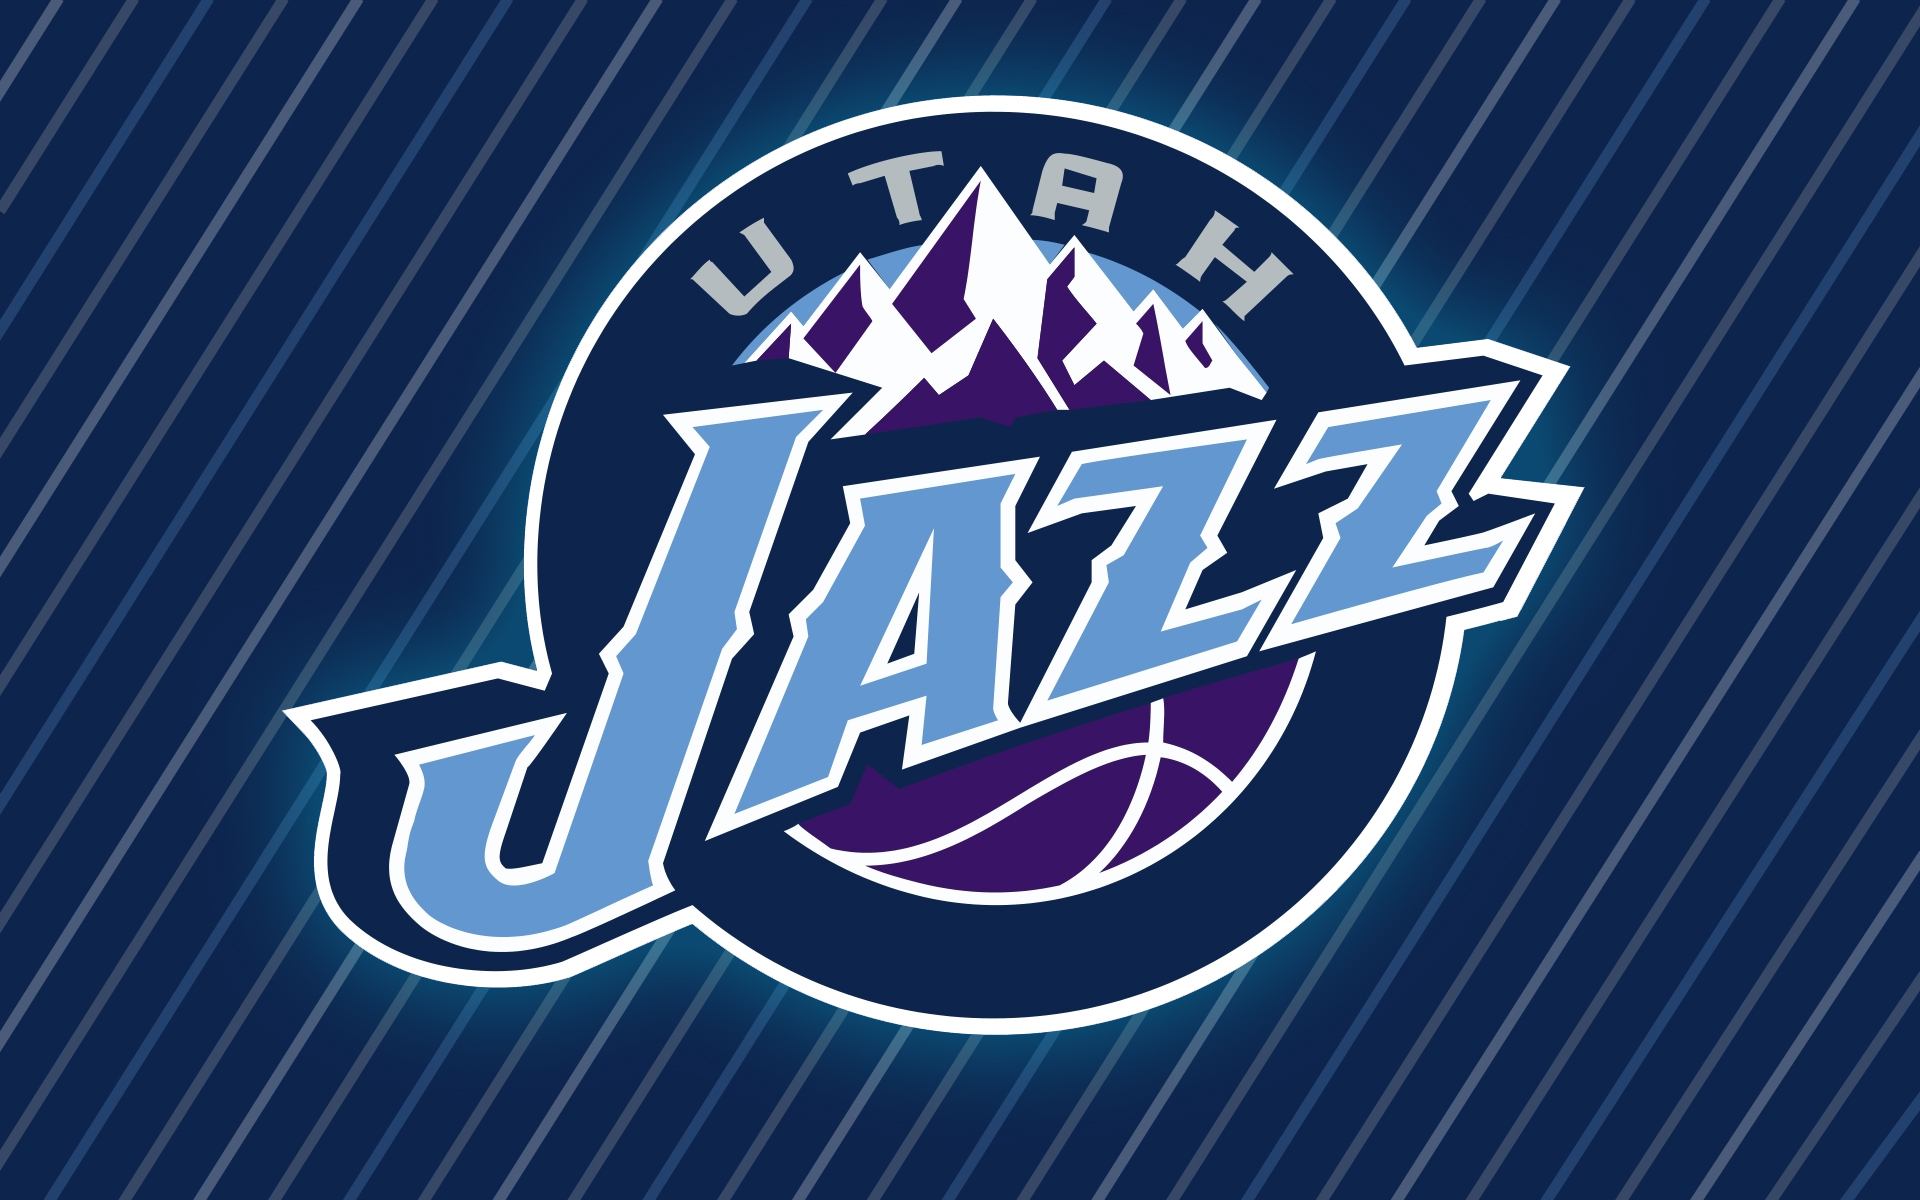 Melhores papéis de parede de Utah Jazz para tela do telefone